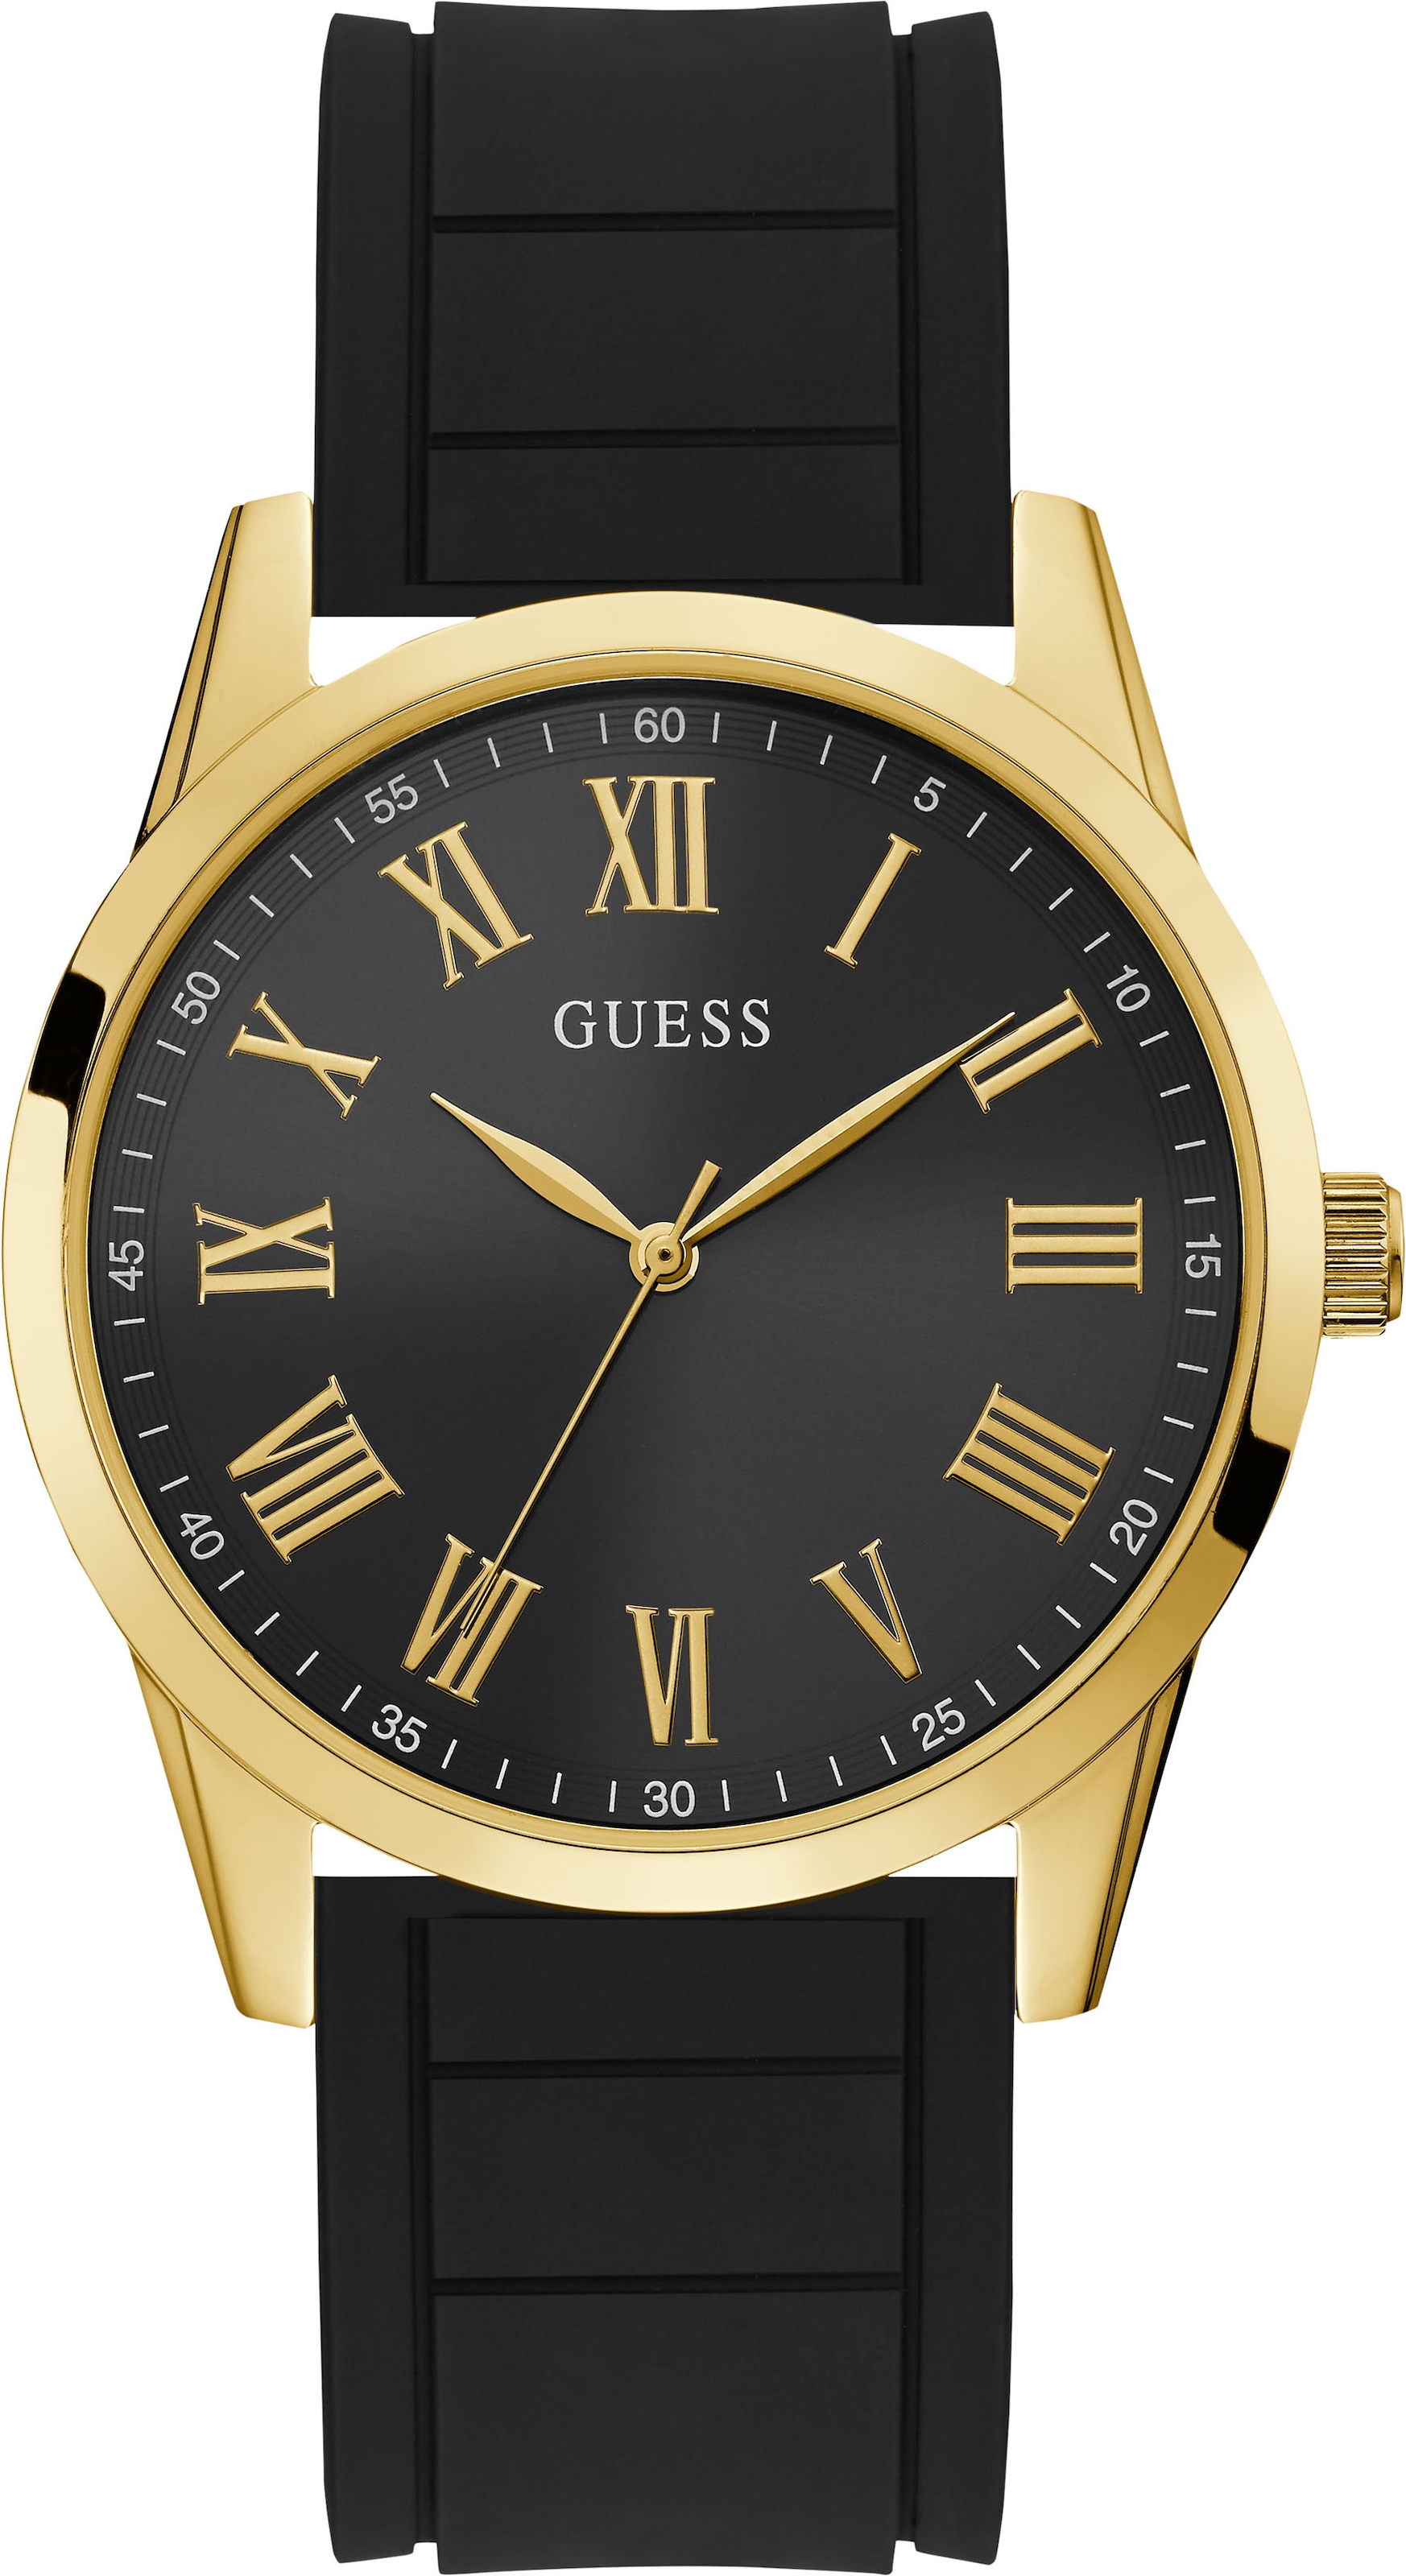 jetzt Teilzahlung auf Guess online für kaufen Uhren Herren